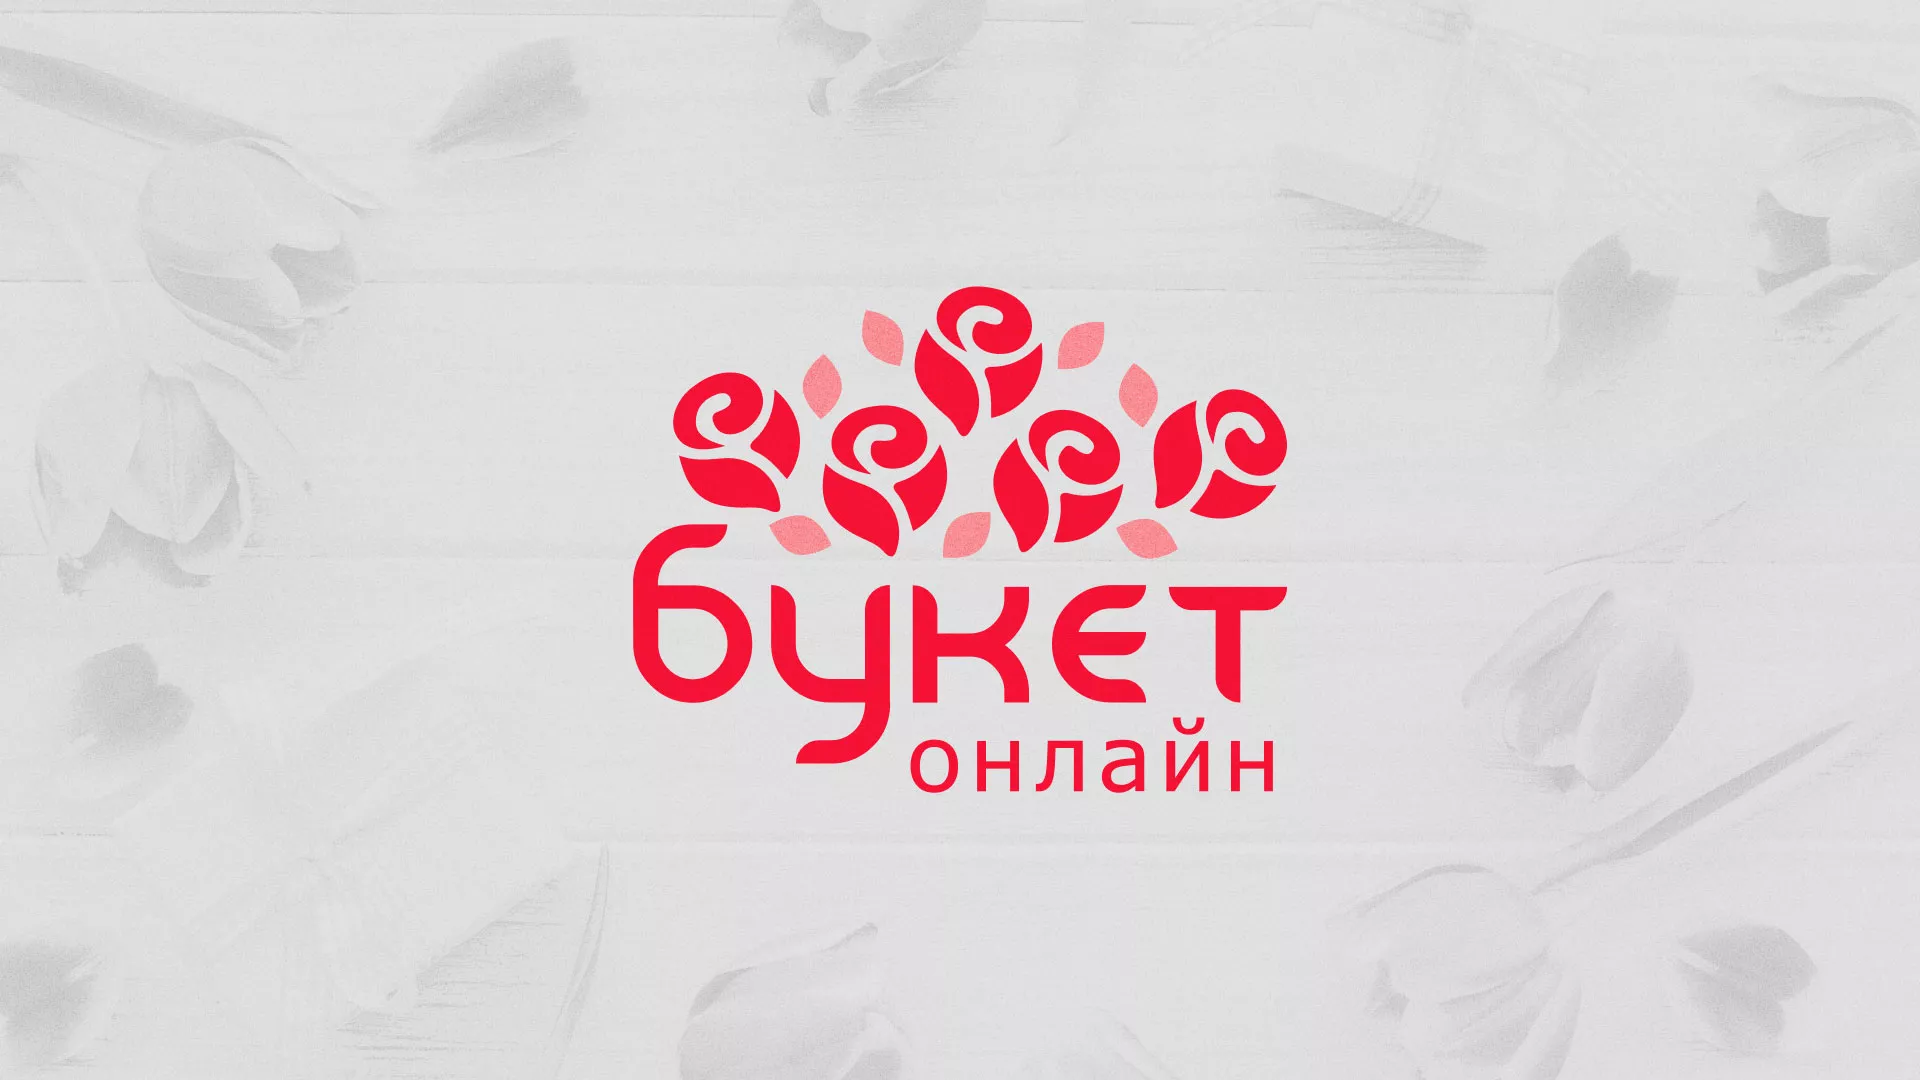 Создание интернет-магазина «Букет-онлайн» по цветам в Красновишерске